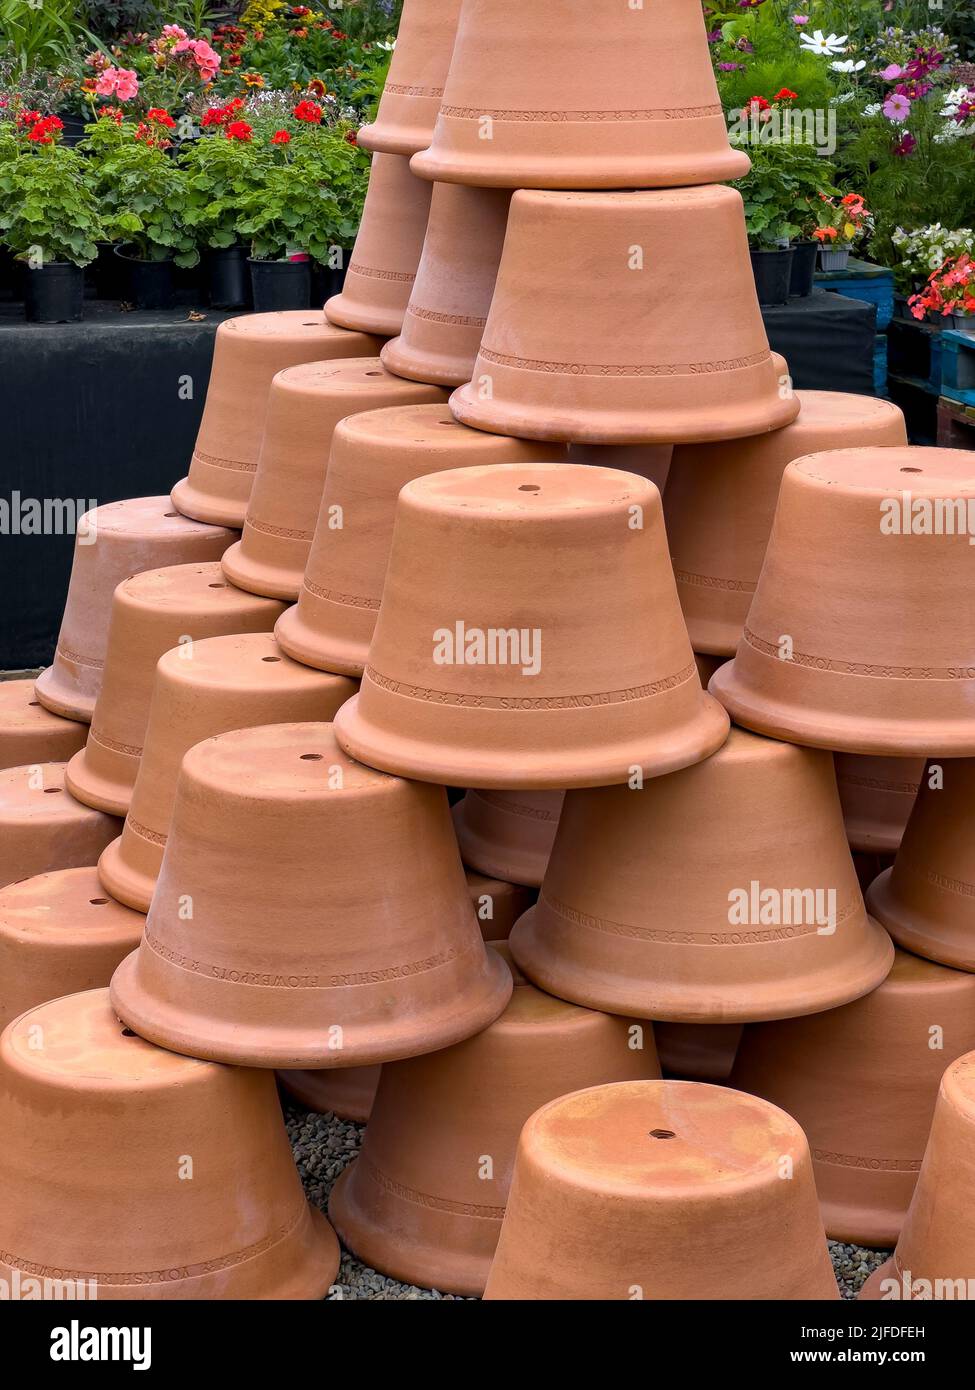 Pots en terre cuite à vendre dans un jardin Banque D'Images